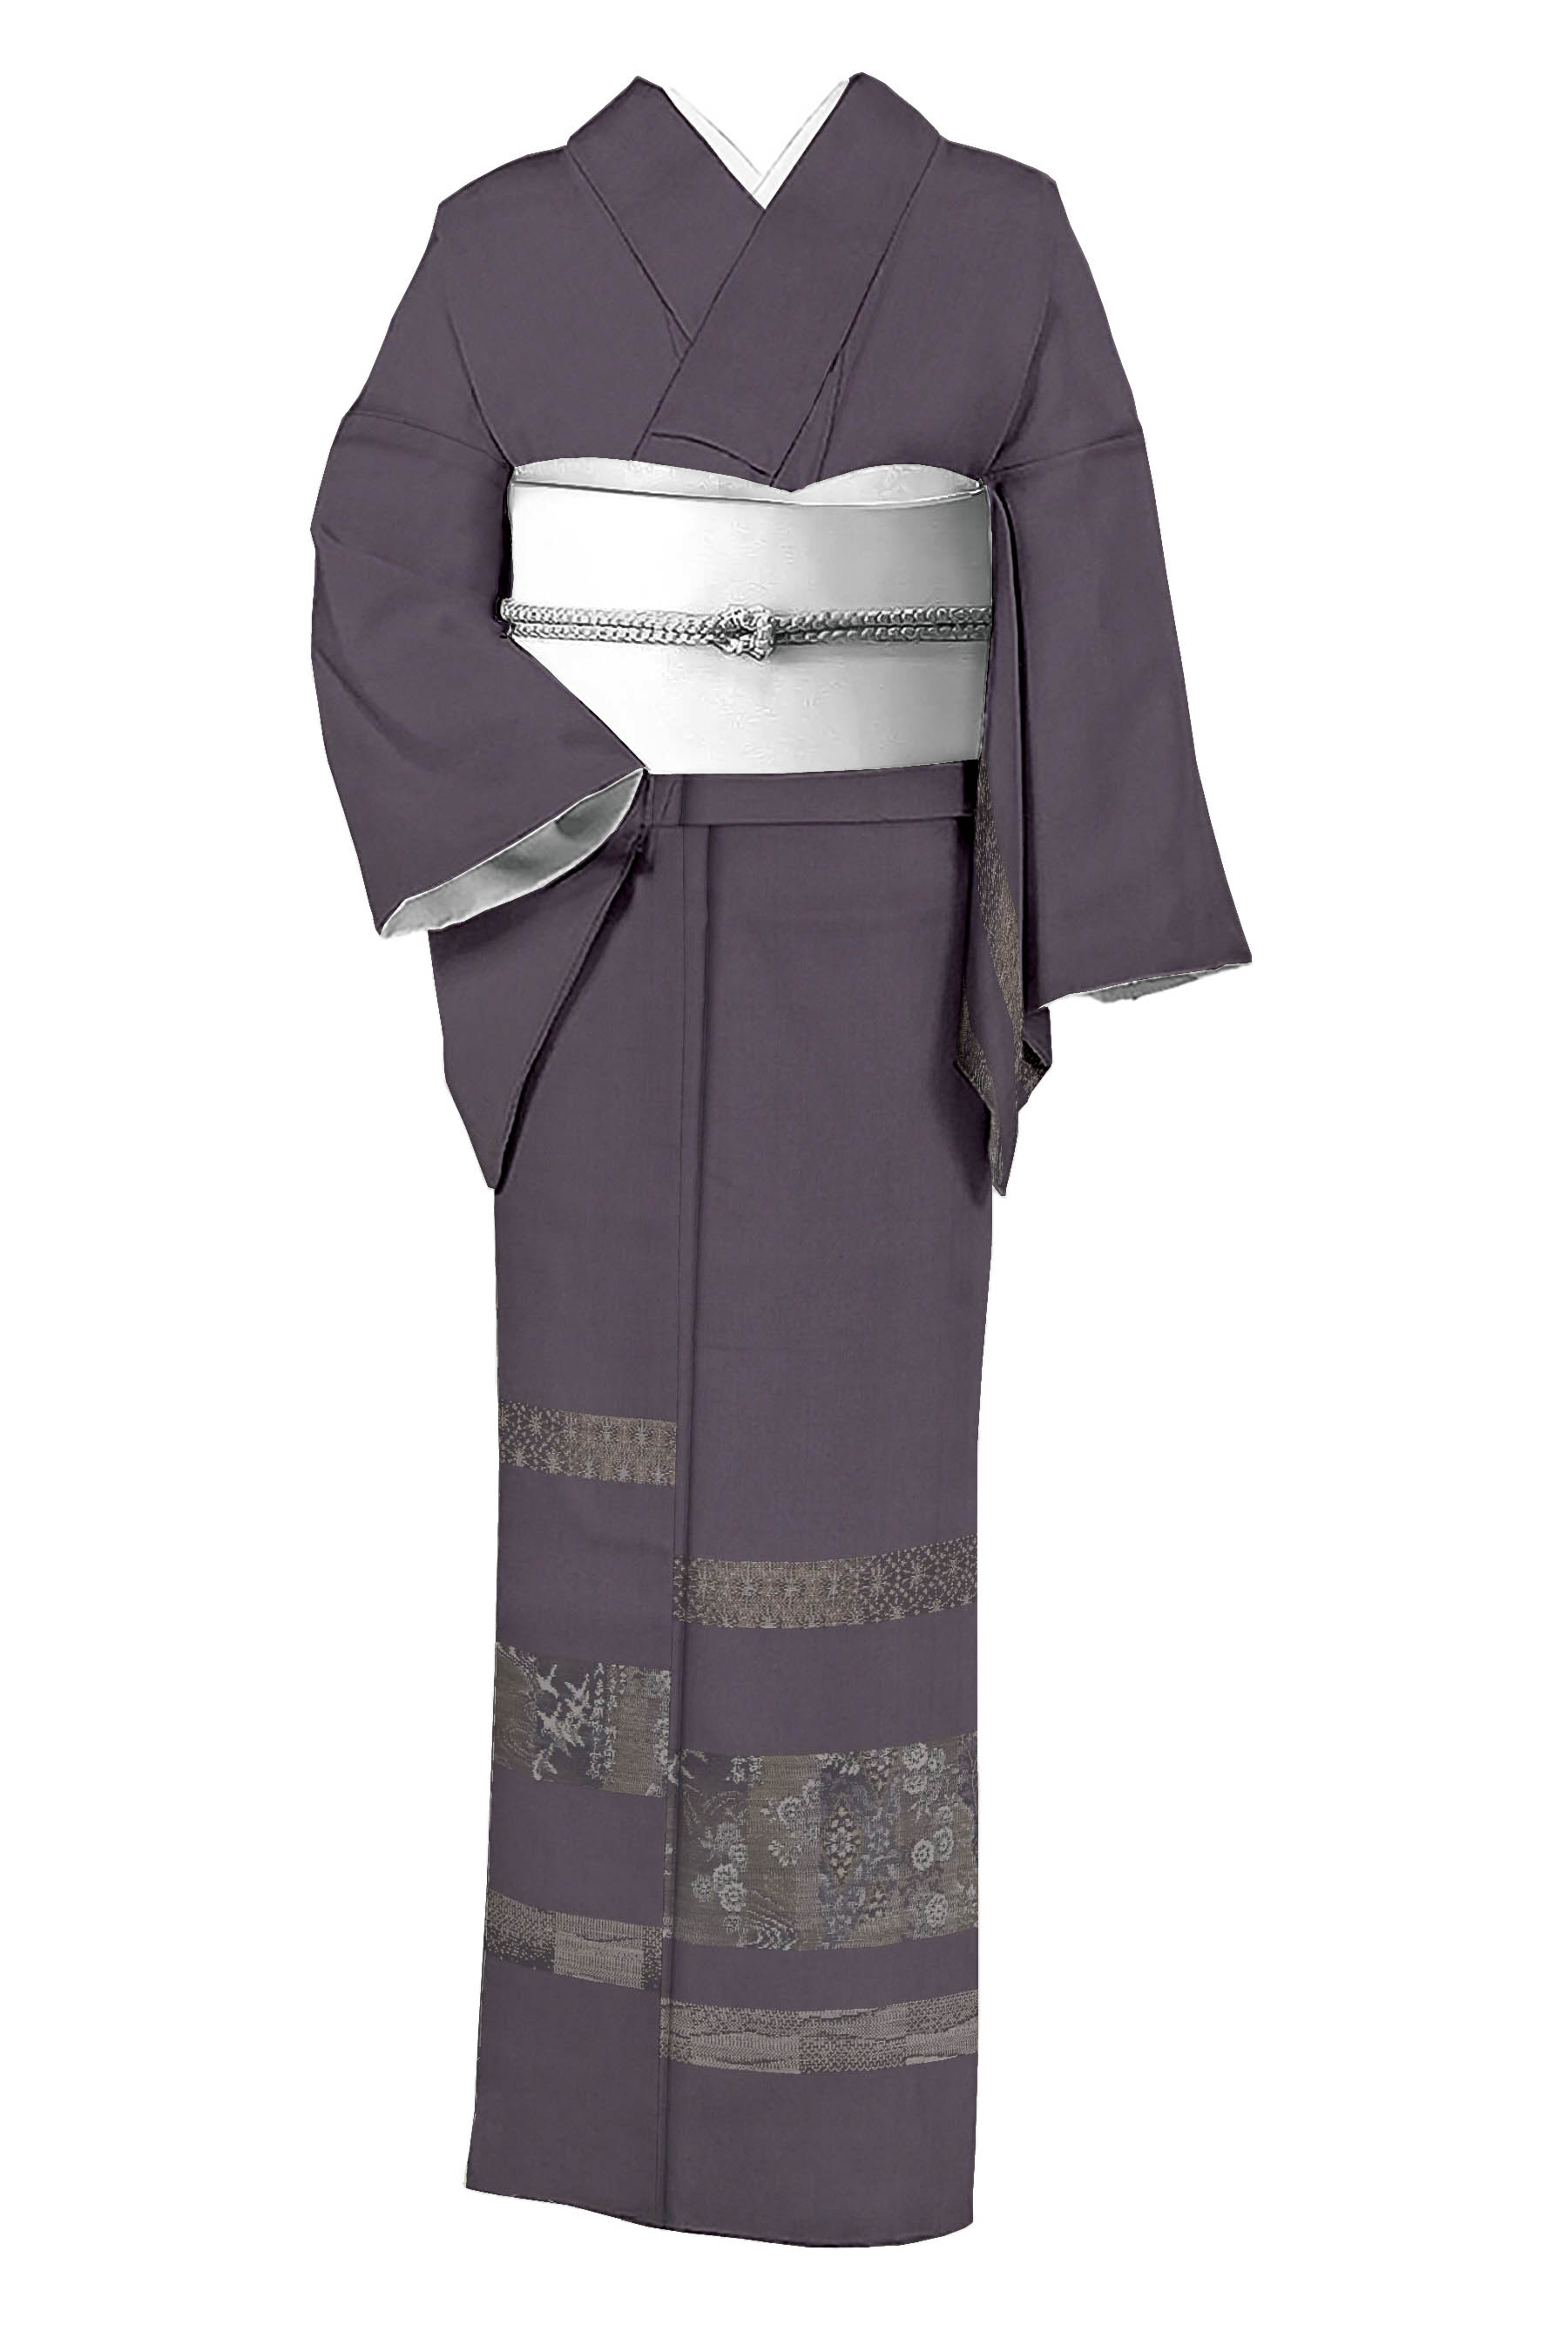 屋久島染の手織りの大島紬の小紋 着物 純泥染 古代染色 着物-